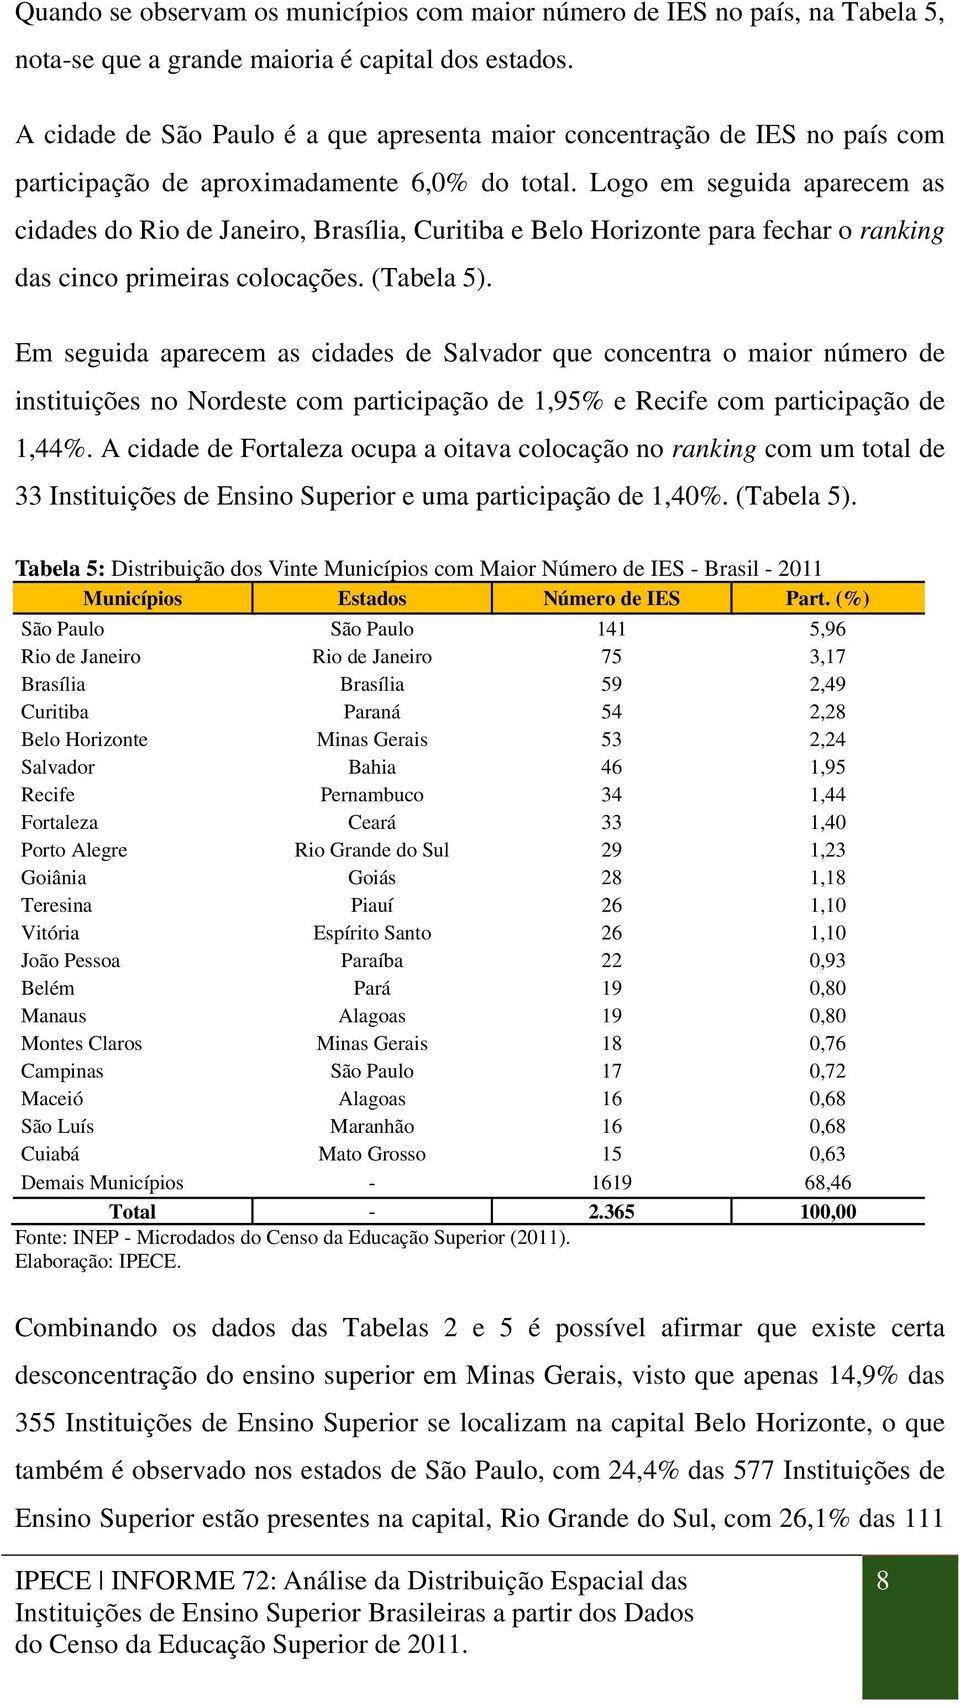 Logo em seguida aparecem as cidades do Rio de Janeiro, Brasília, Curitiba e Belo Horizonte para fechar o ranking das cinco primeiras colocações. (Tabela 5).